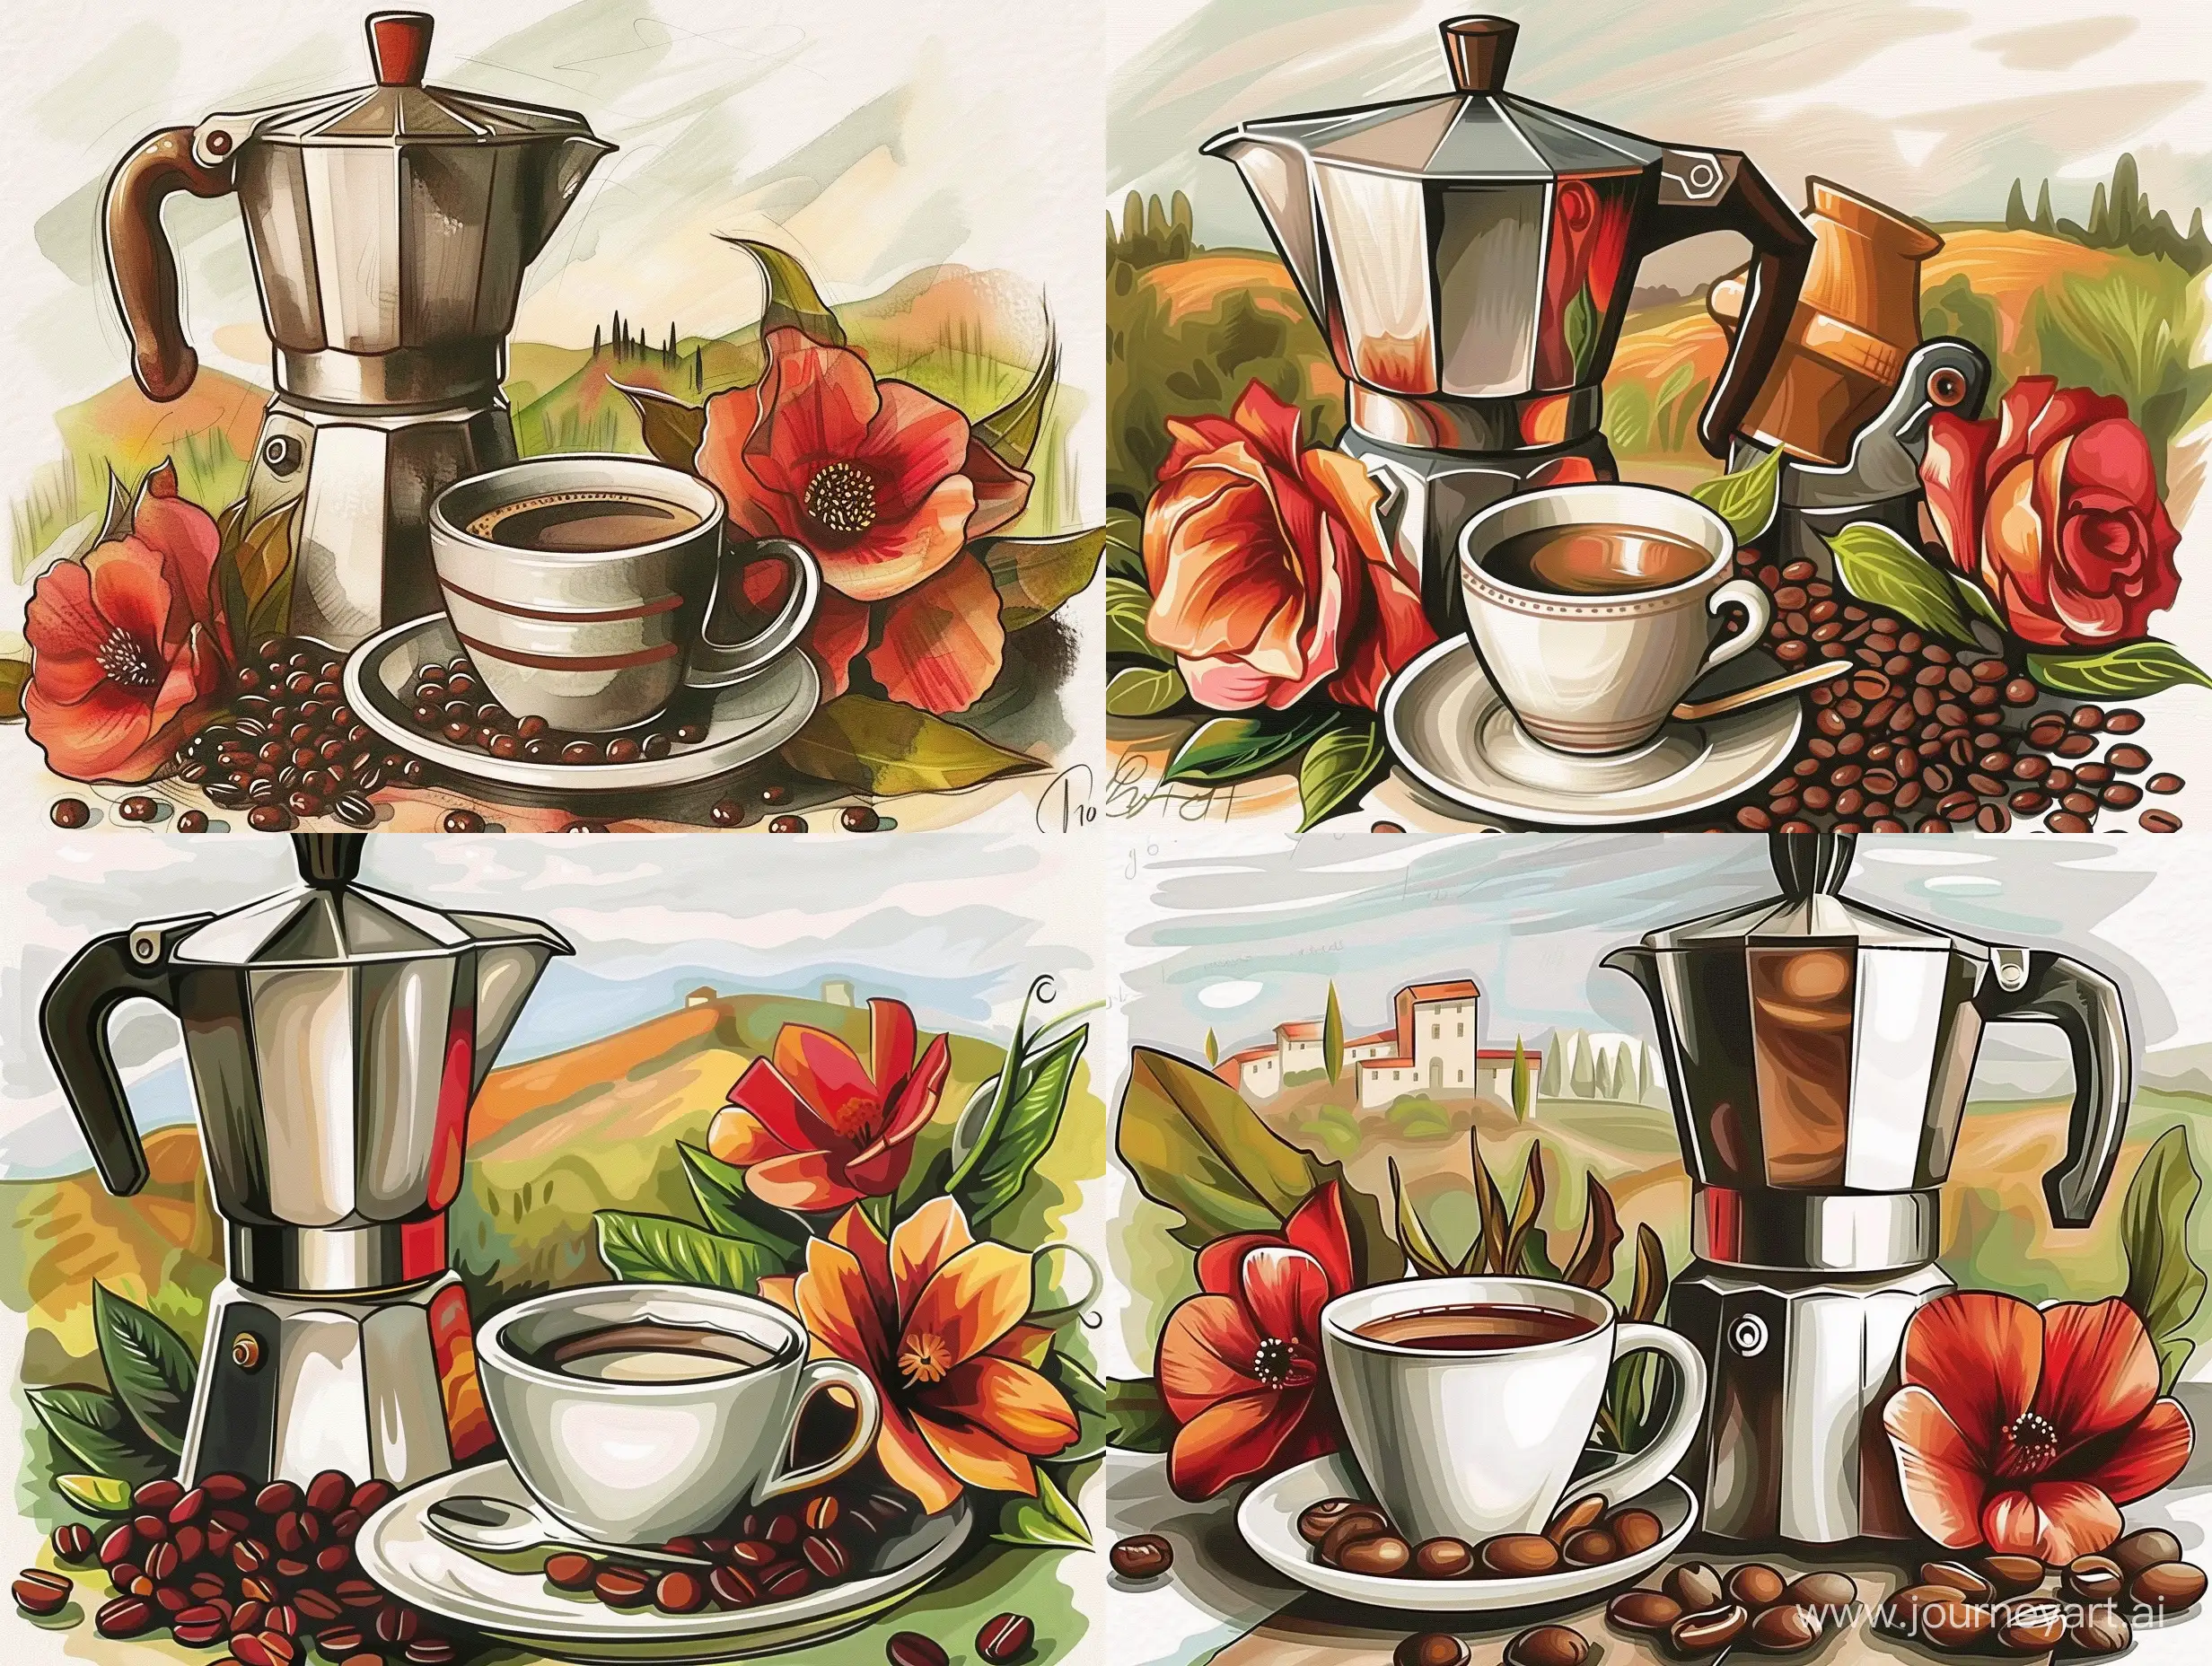 Иллюстрация  кофе, зерна кофе, кружка кофе, кофейник, на фоне пейзажа Италии  - sref https://i.pinimg.com/564x/73/2b/6e/732b6e51a91994567e377da986b61ad3.jpg